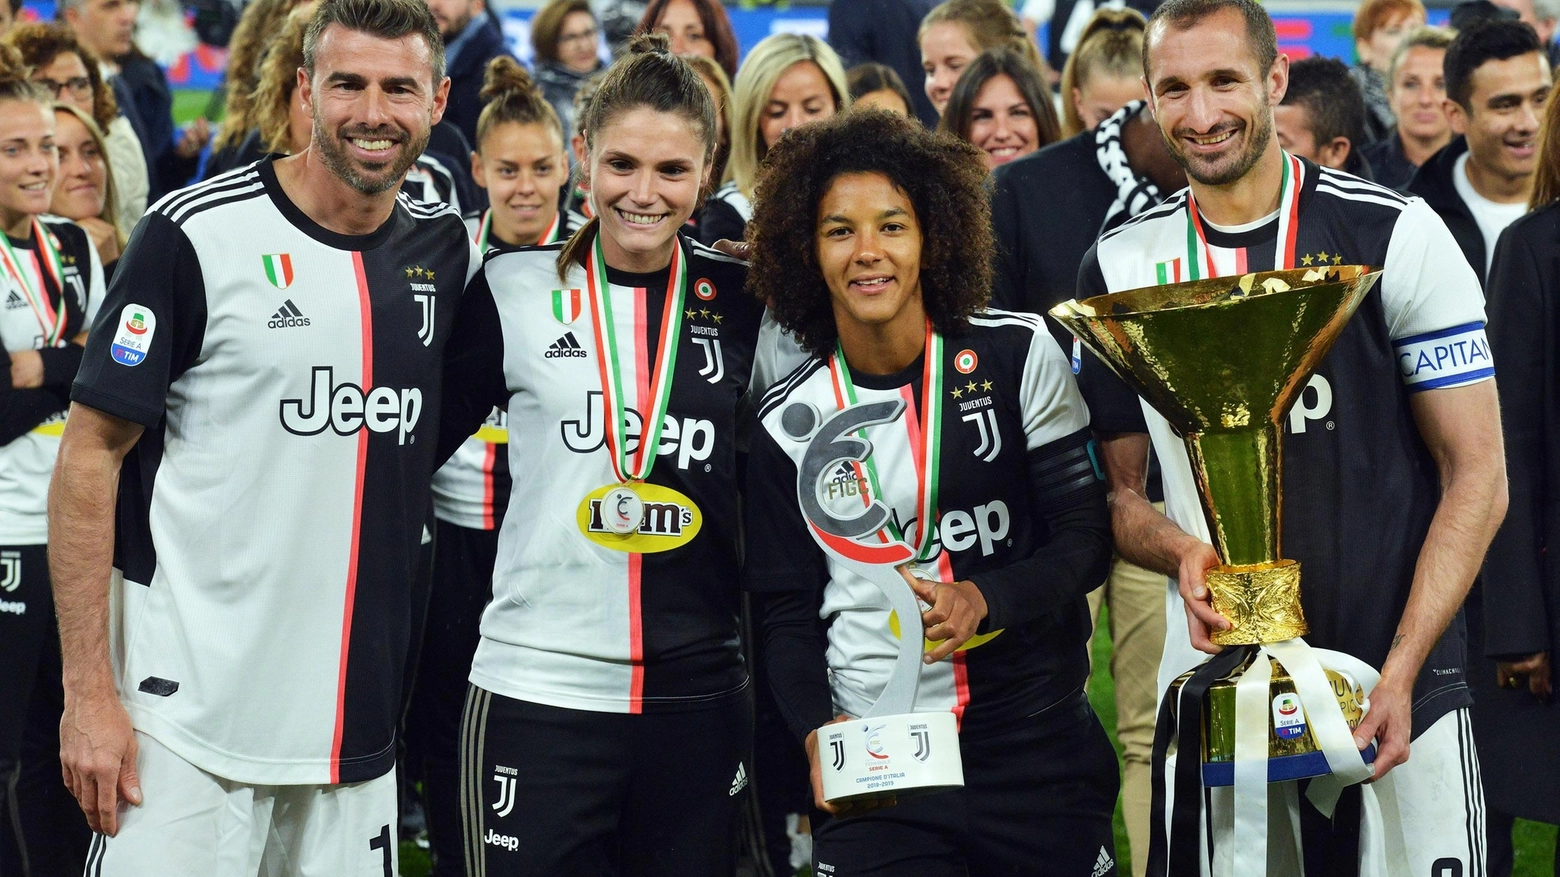 La Juventus Women è campione d'Italia 2019/20